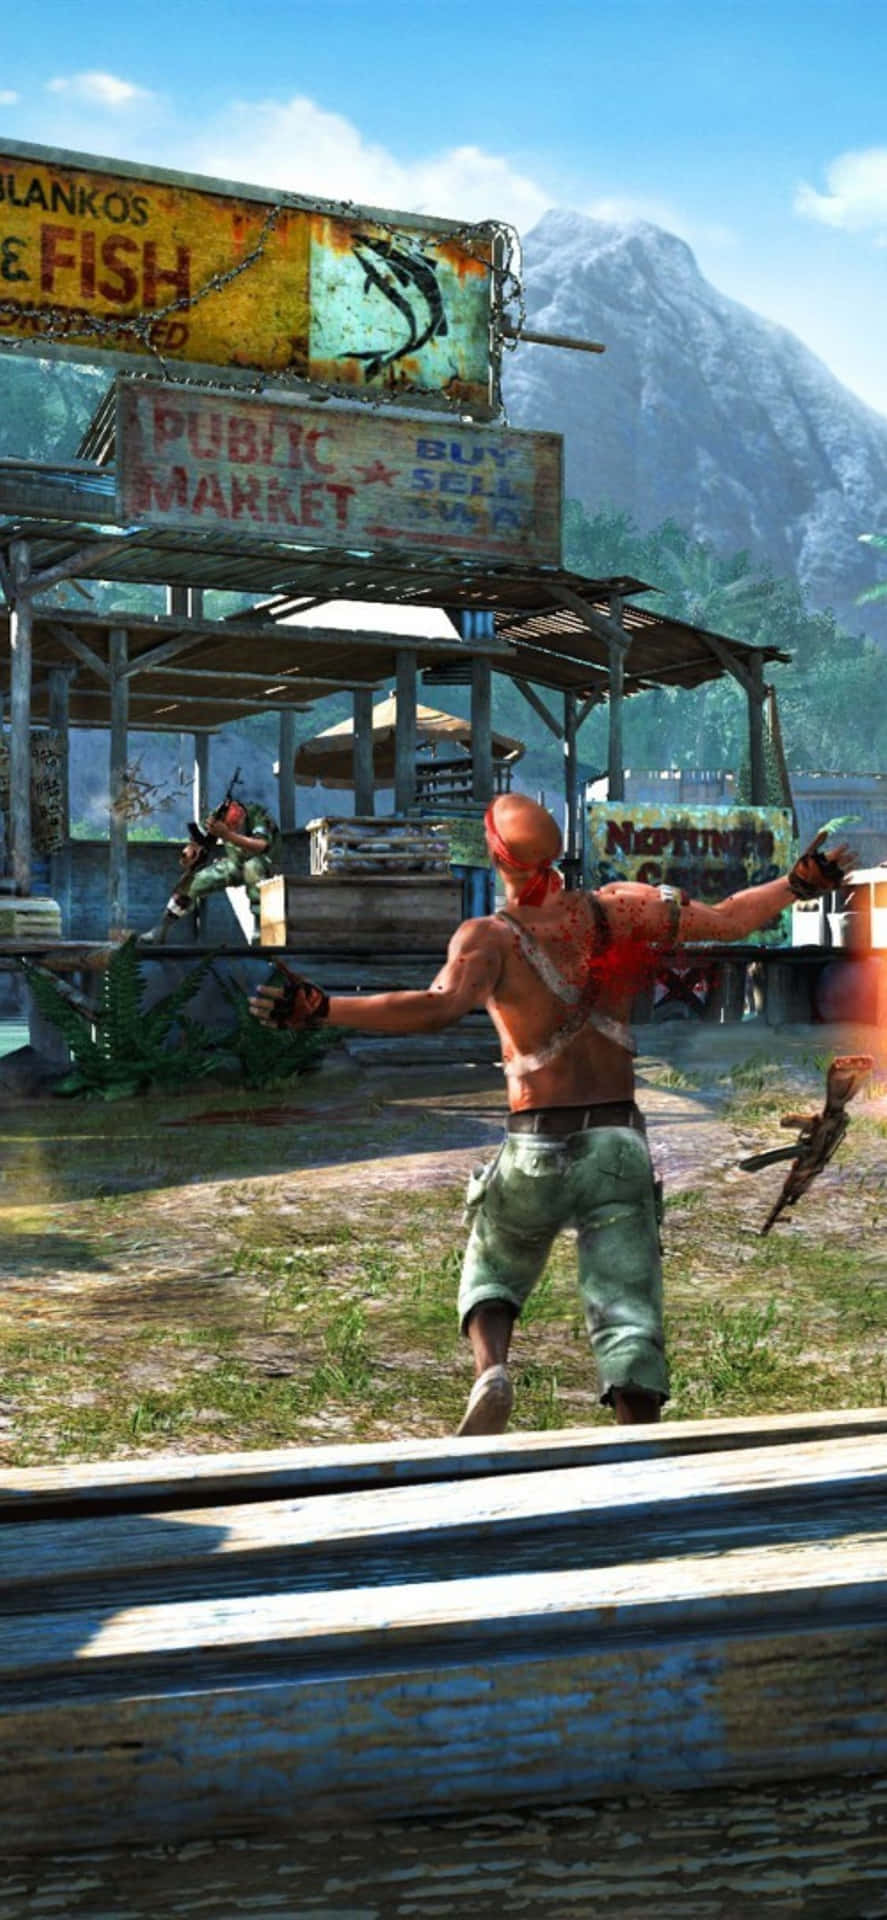 Iphonex Bakgrund Med Far Cry 3 Motiv Av En Man Som Skjuter Med Gevär.